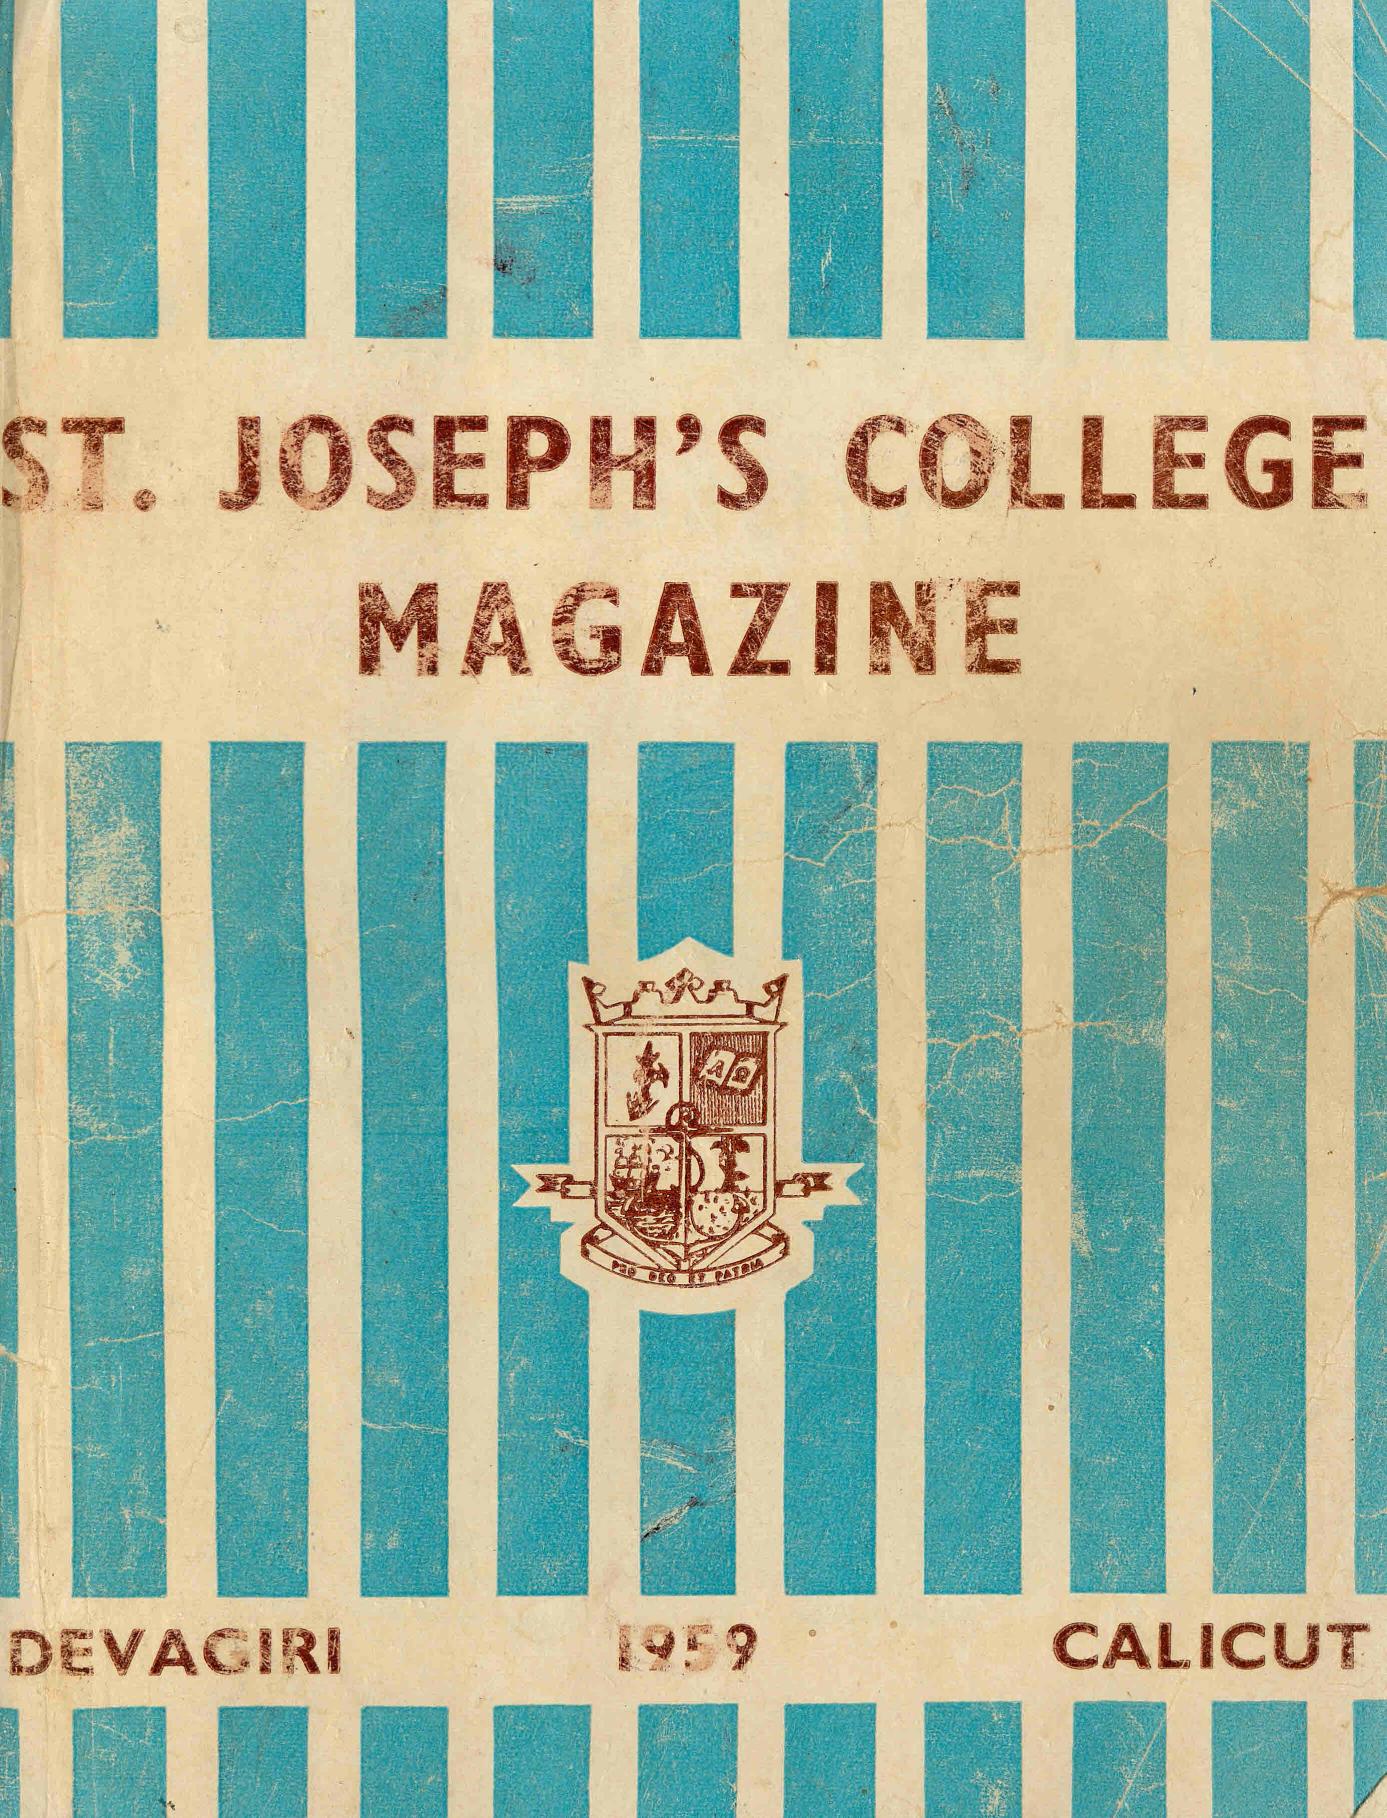 1959-St. Josephs College Magazine, Devagiri